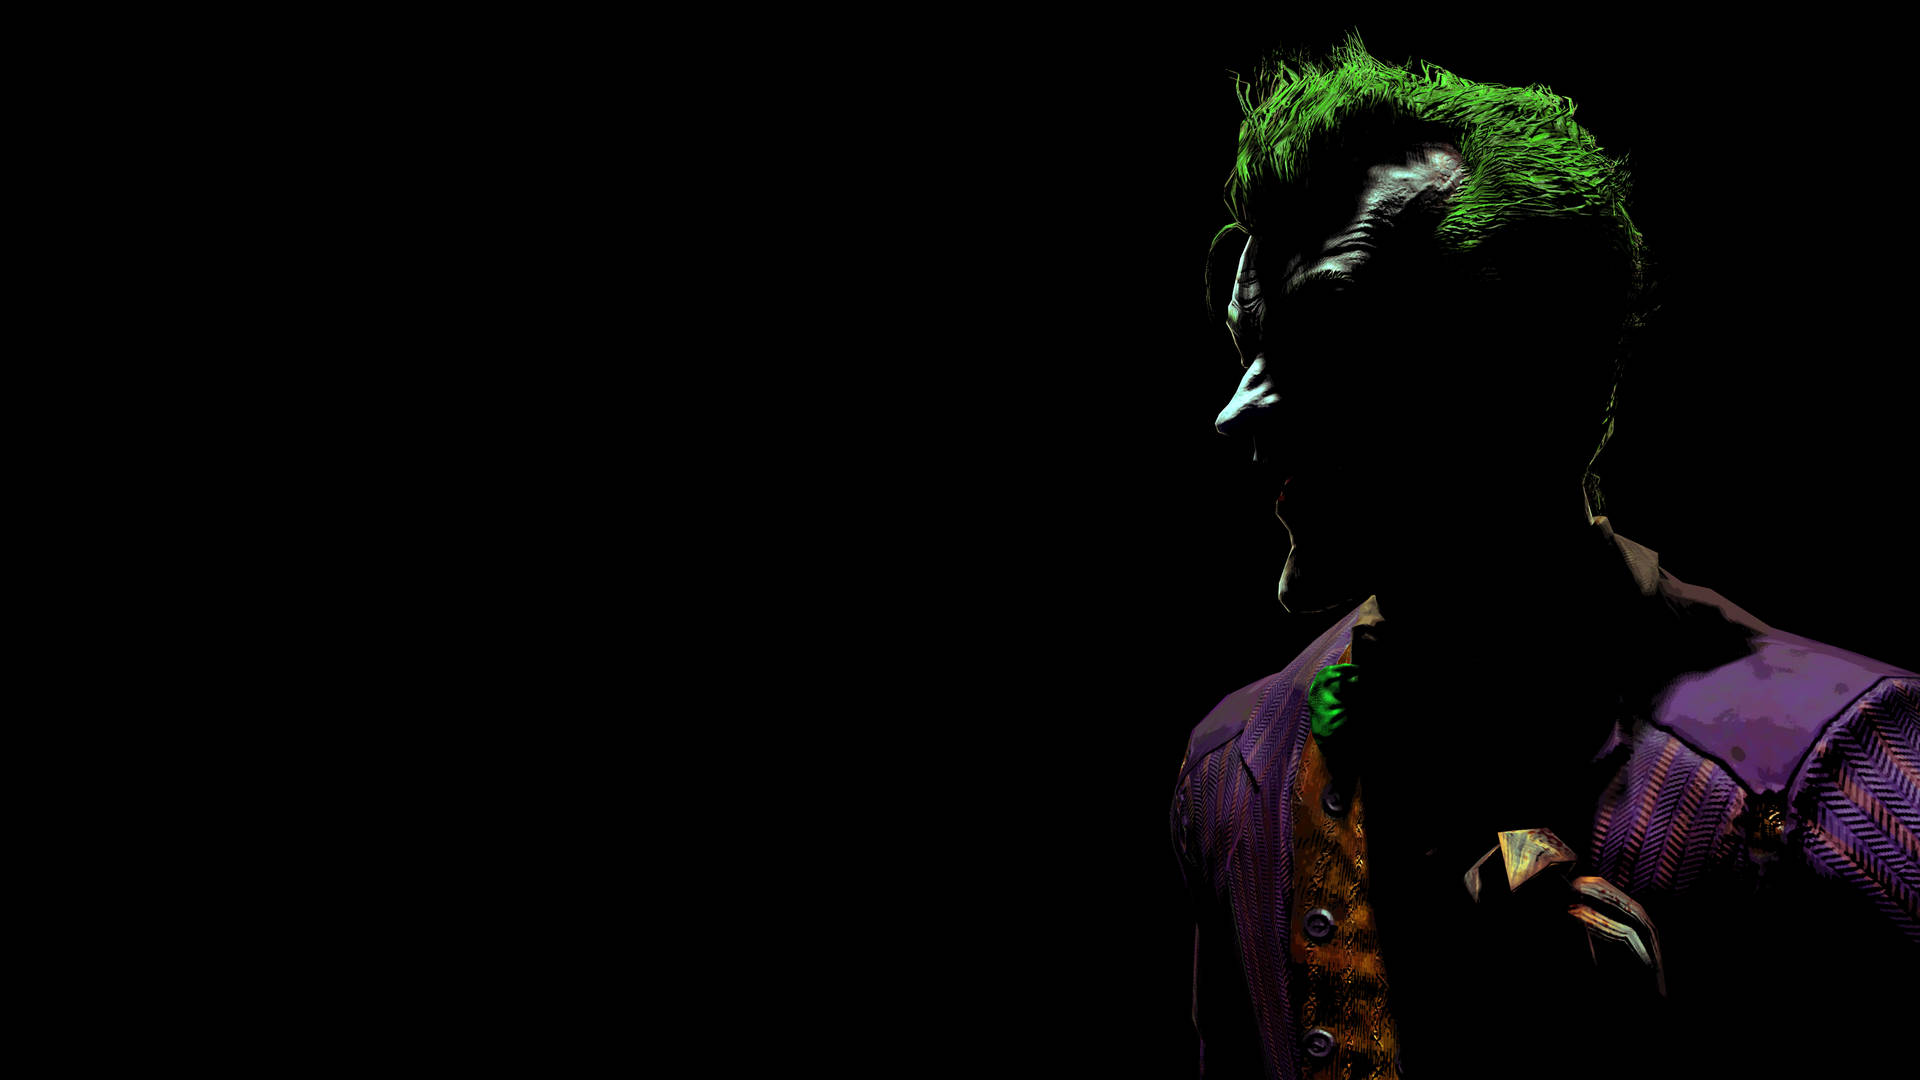 Black Ultra Hd Joker In Silhouette